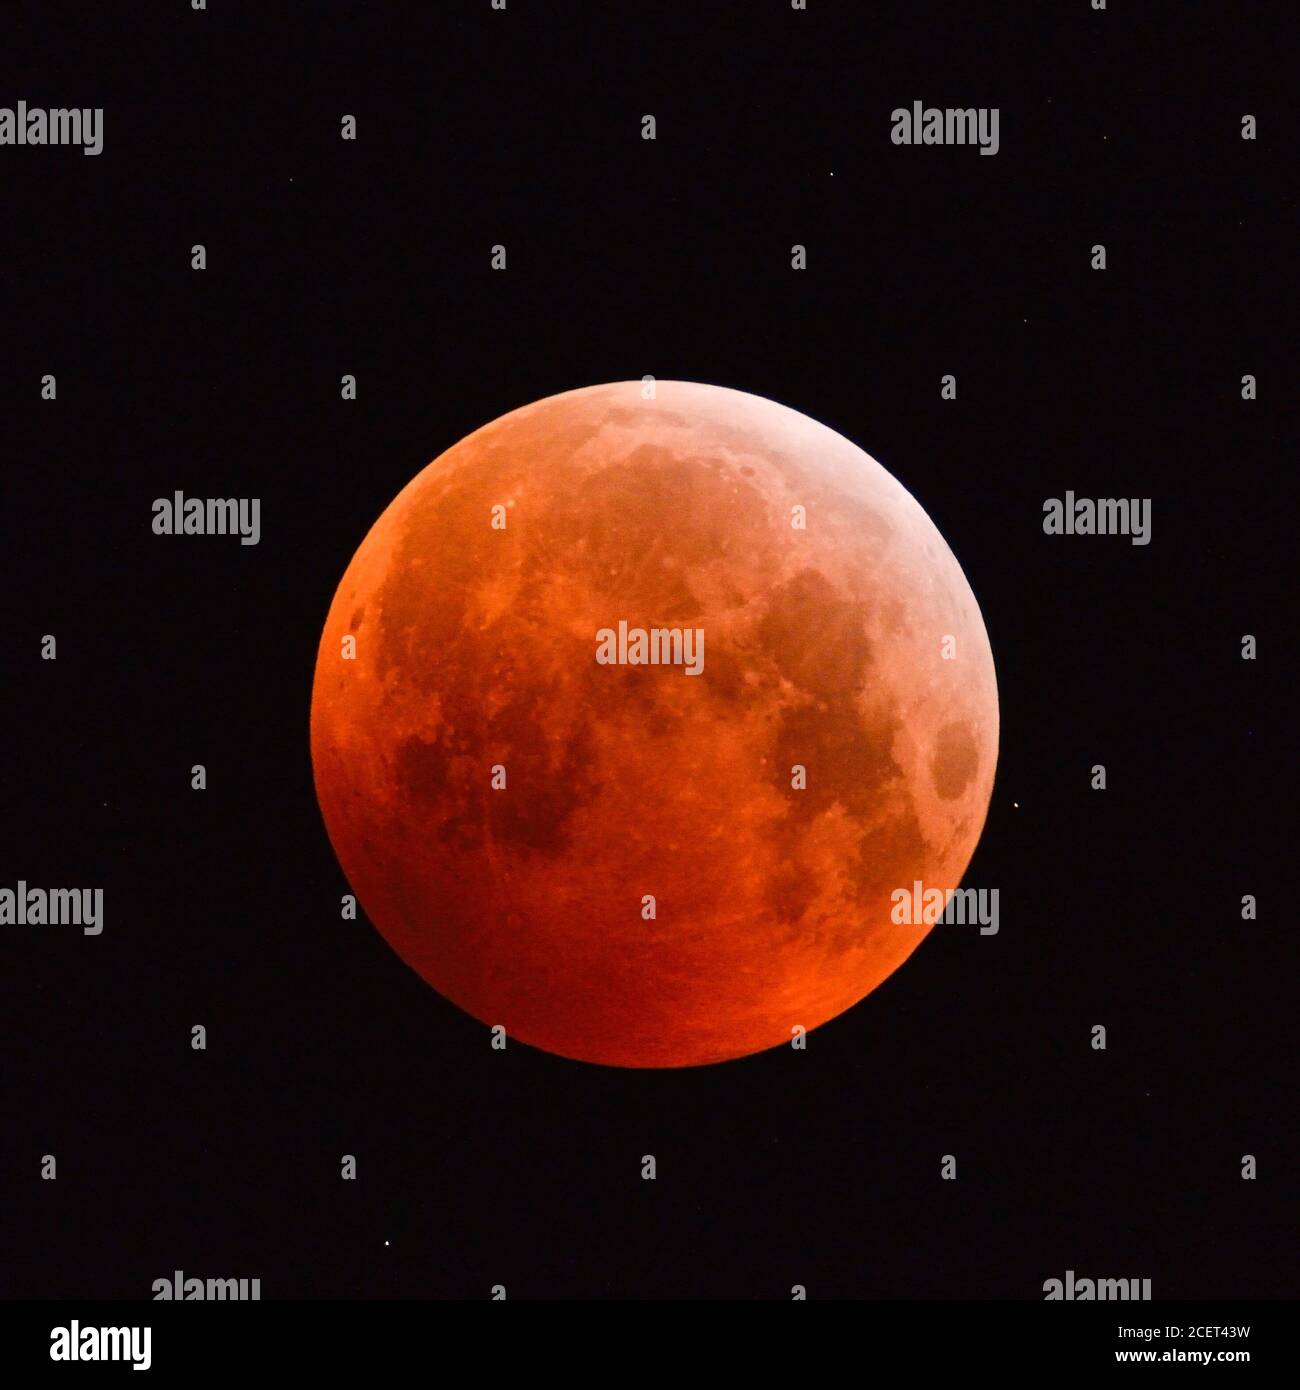 Éclipse de lune Éclipse lunaire, super, rouge sang, supermoon, lune Pleine lune orange rouge avec des étoiles scintillantes, 21 janvier 2019, l'Allemagne. Banque D'Images